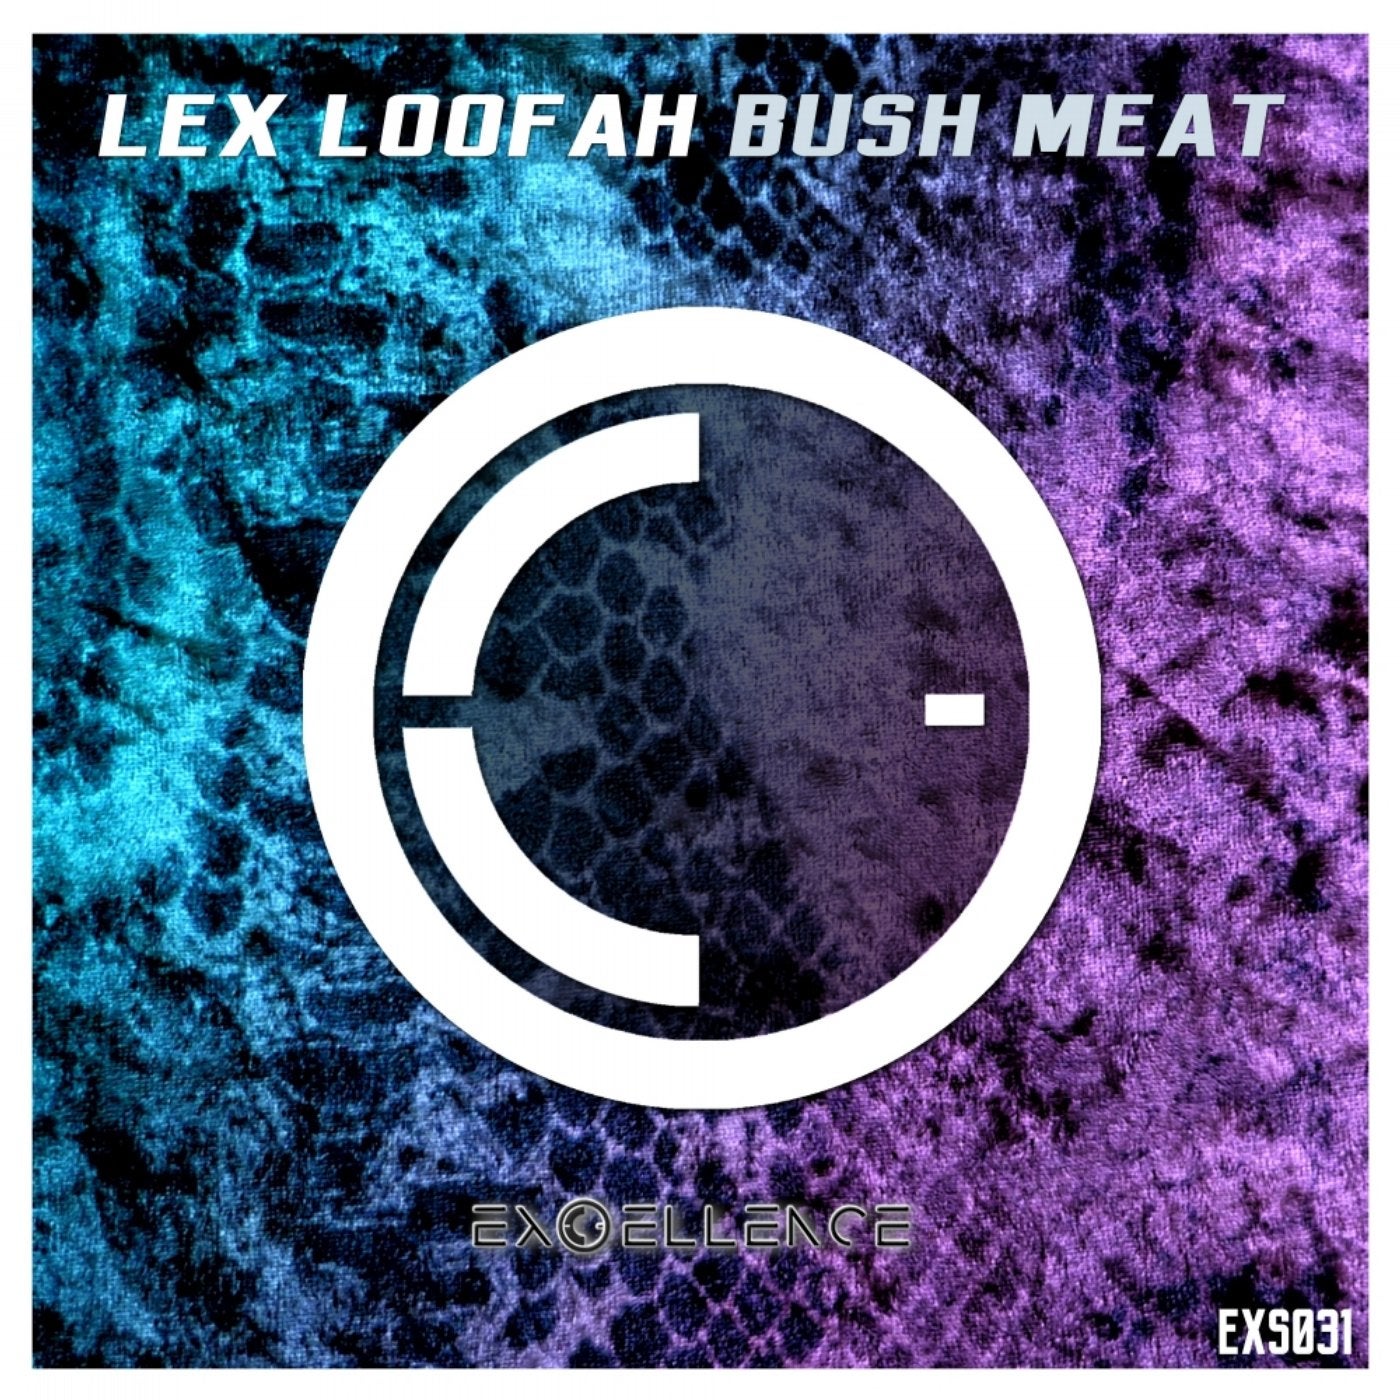 Bush Meat